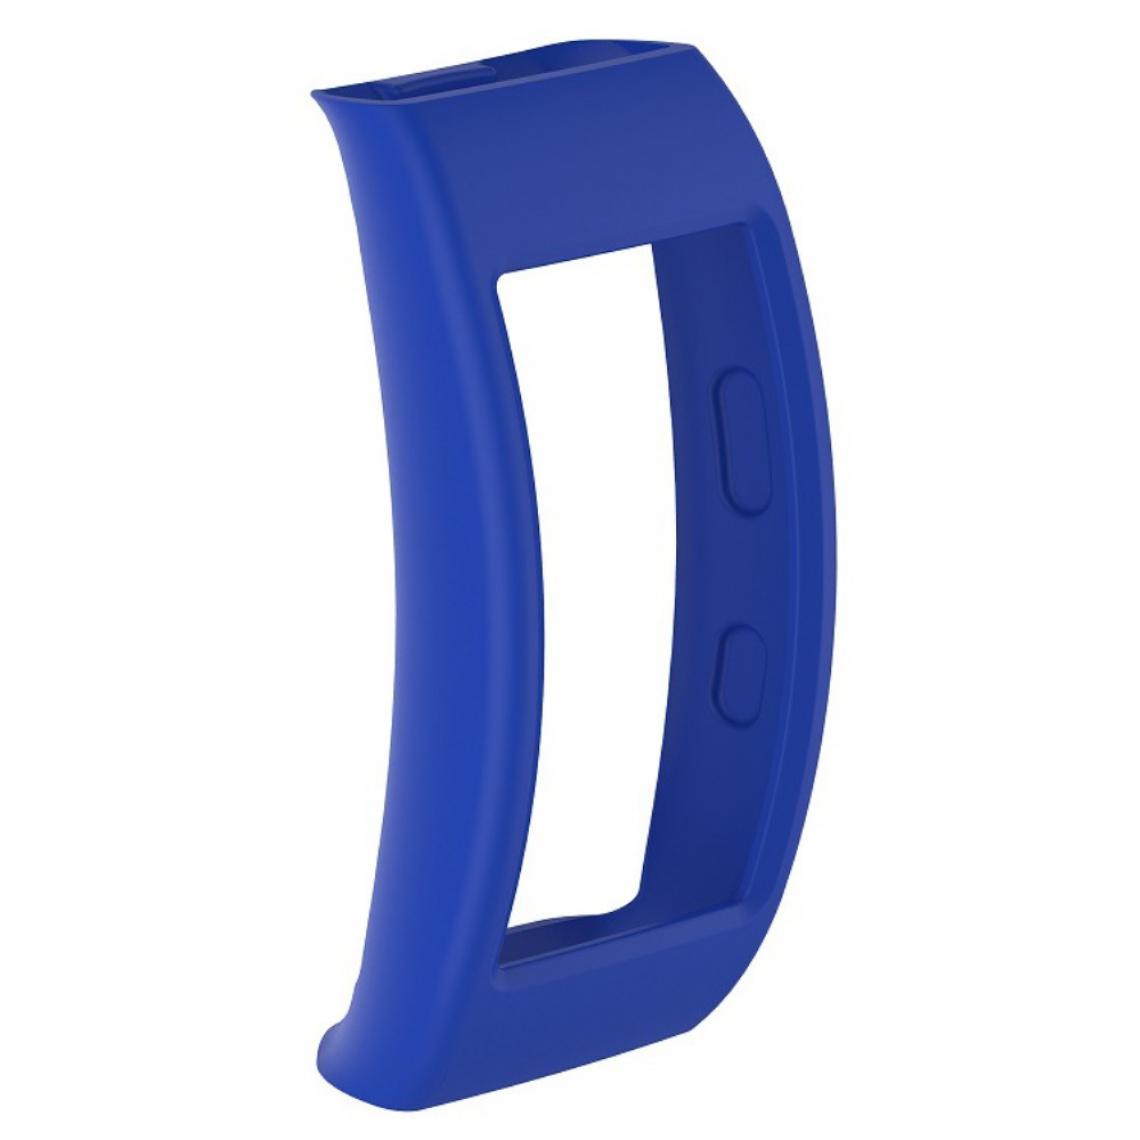 Other - Coque en silicone souple bleu clair pour votre Samsung Gear Fit2 Pro - Accessoires bracelet connecté